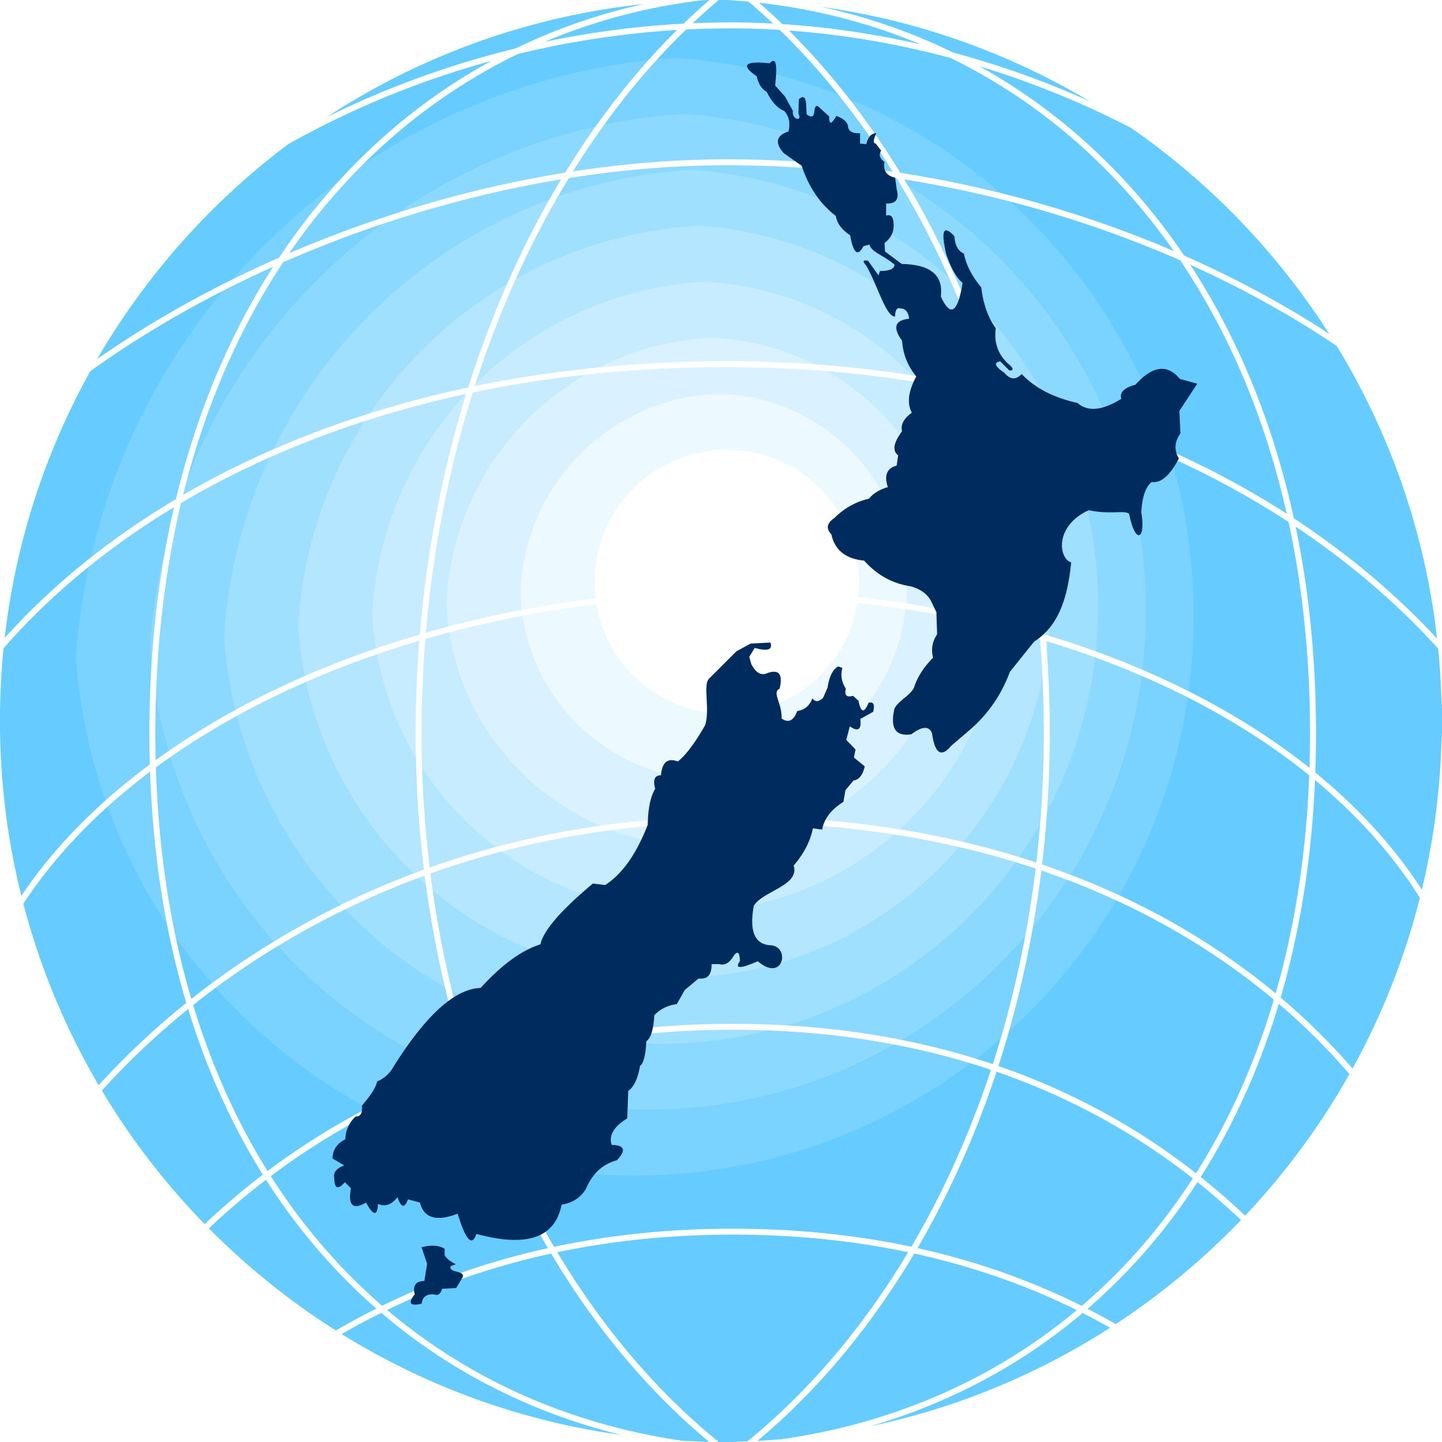 Uus-Meremaa põhja- ja lõunasaare kõrval on Uus-Kaledoonia saar ainus suurem maatükk, mis Zealandiast välja paistab.